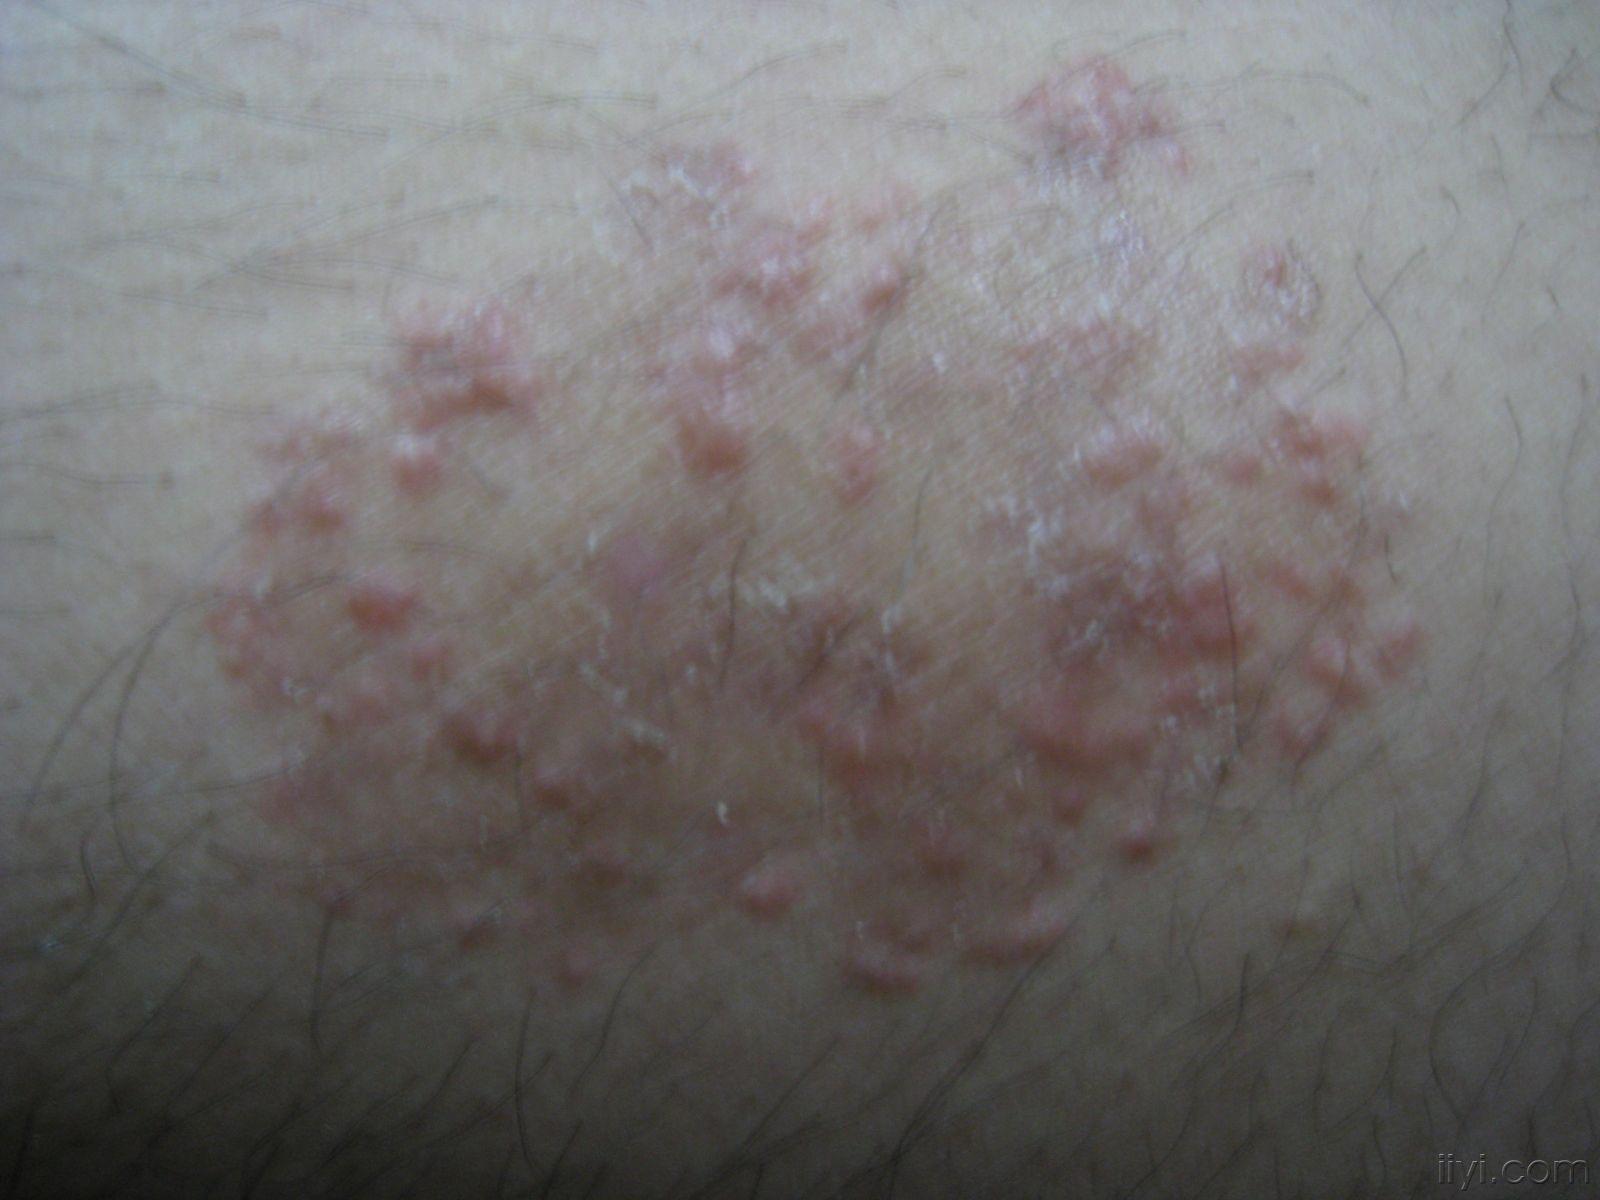 摩擦性苔藓样疹-常见皮肤病-医学